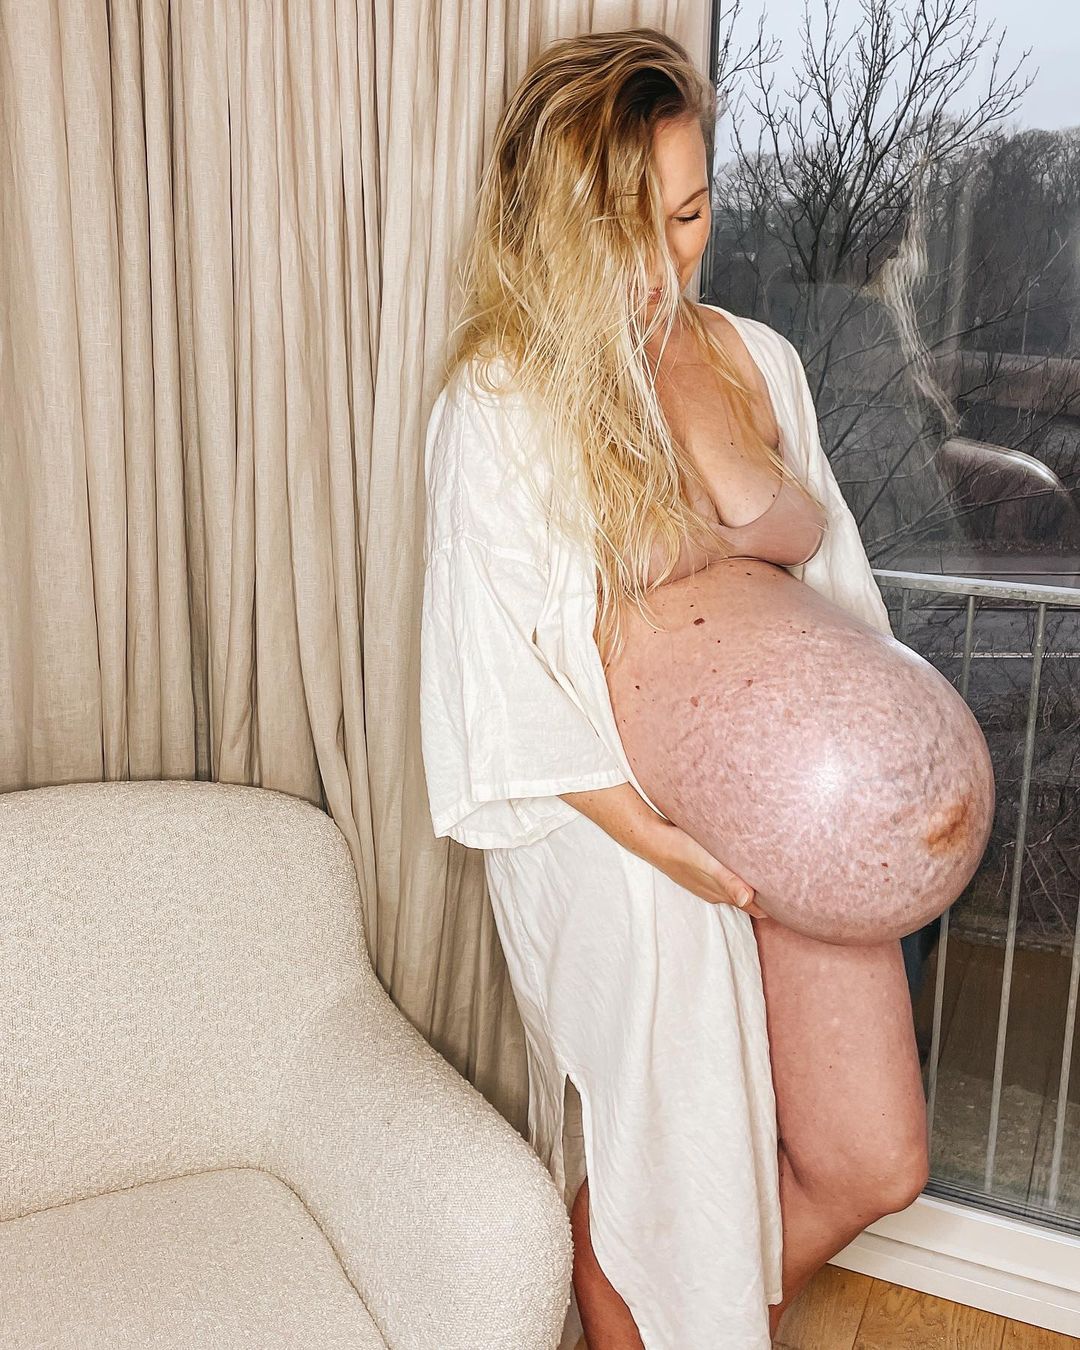 Фото №2 - Беременная прославилась в сети из-за огромного живота очень необычной формы